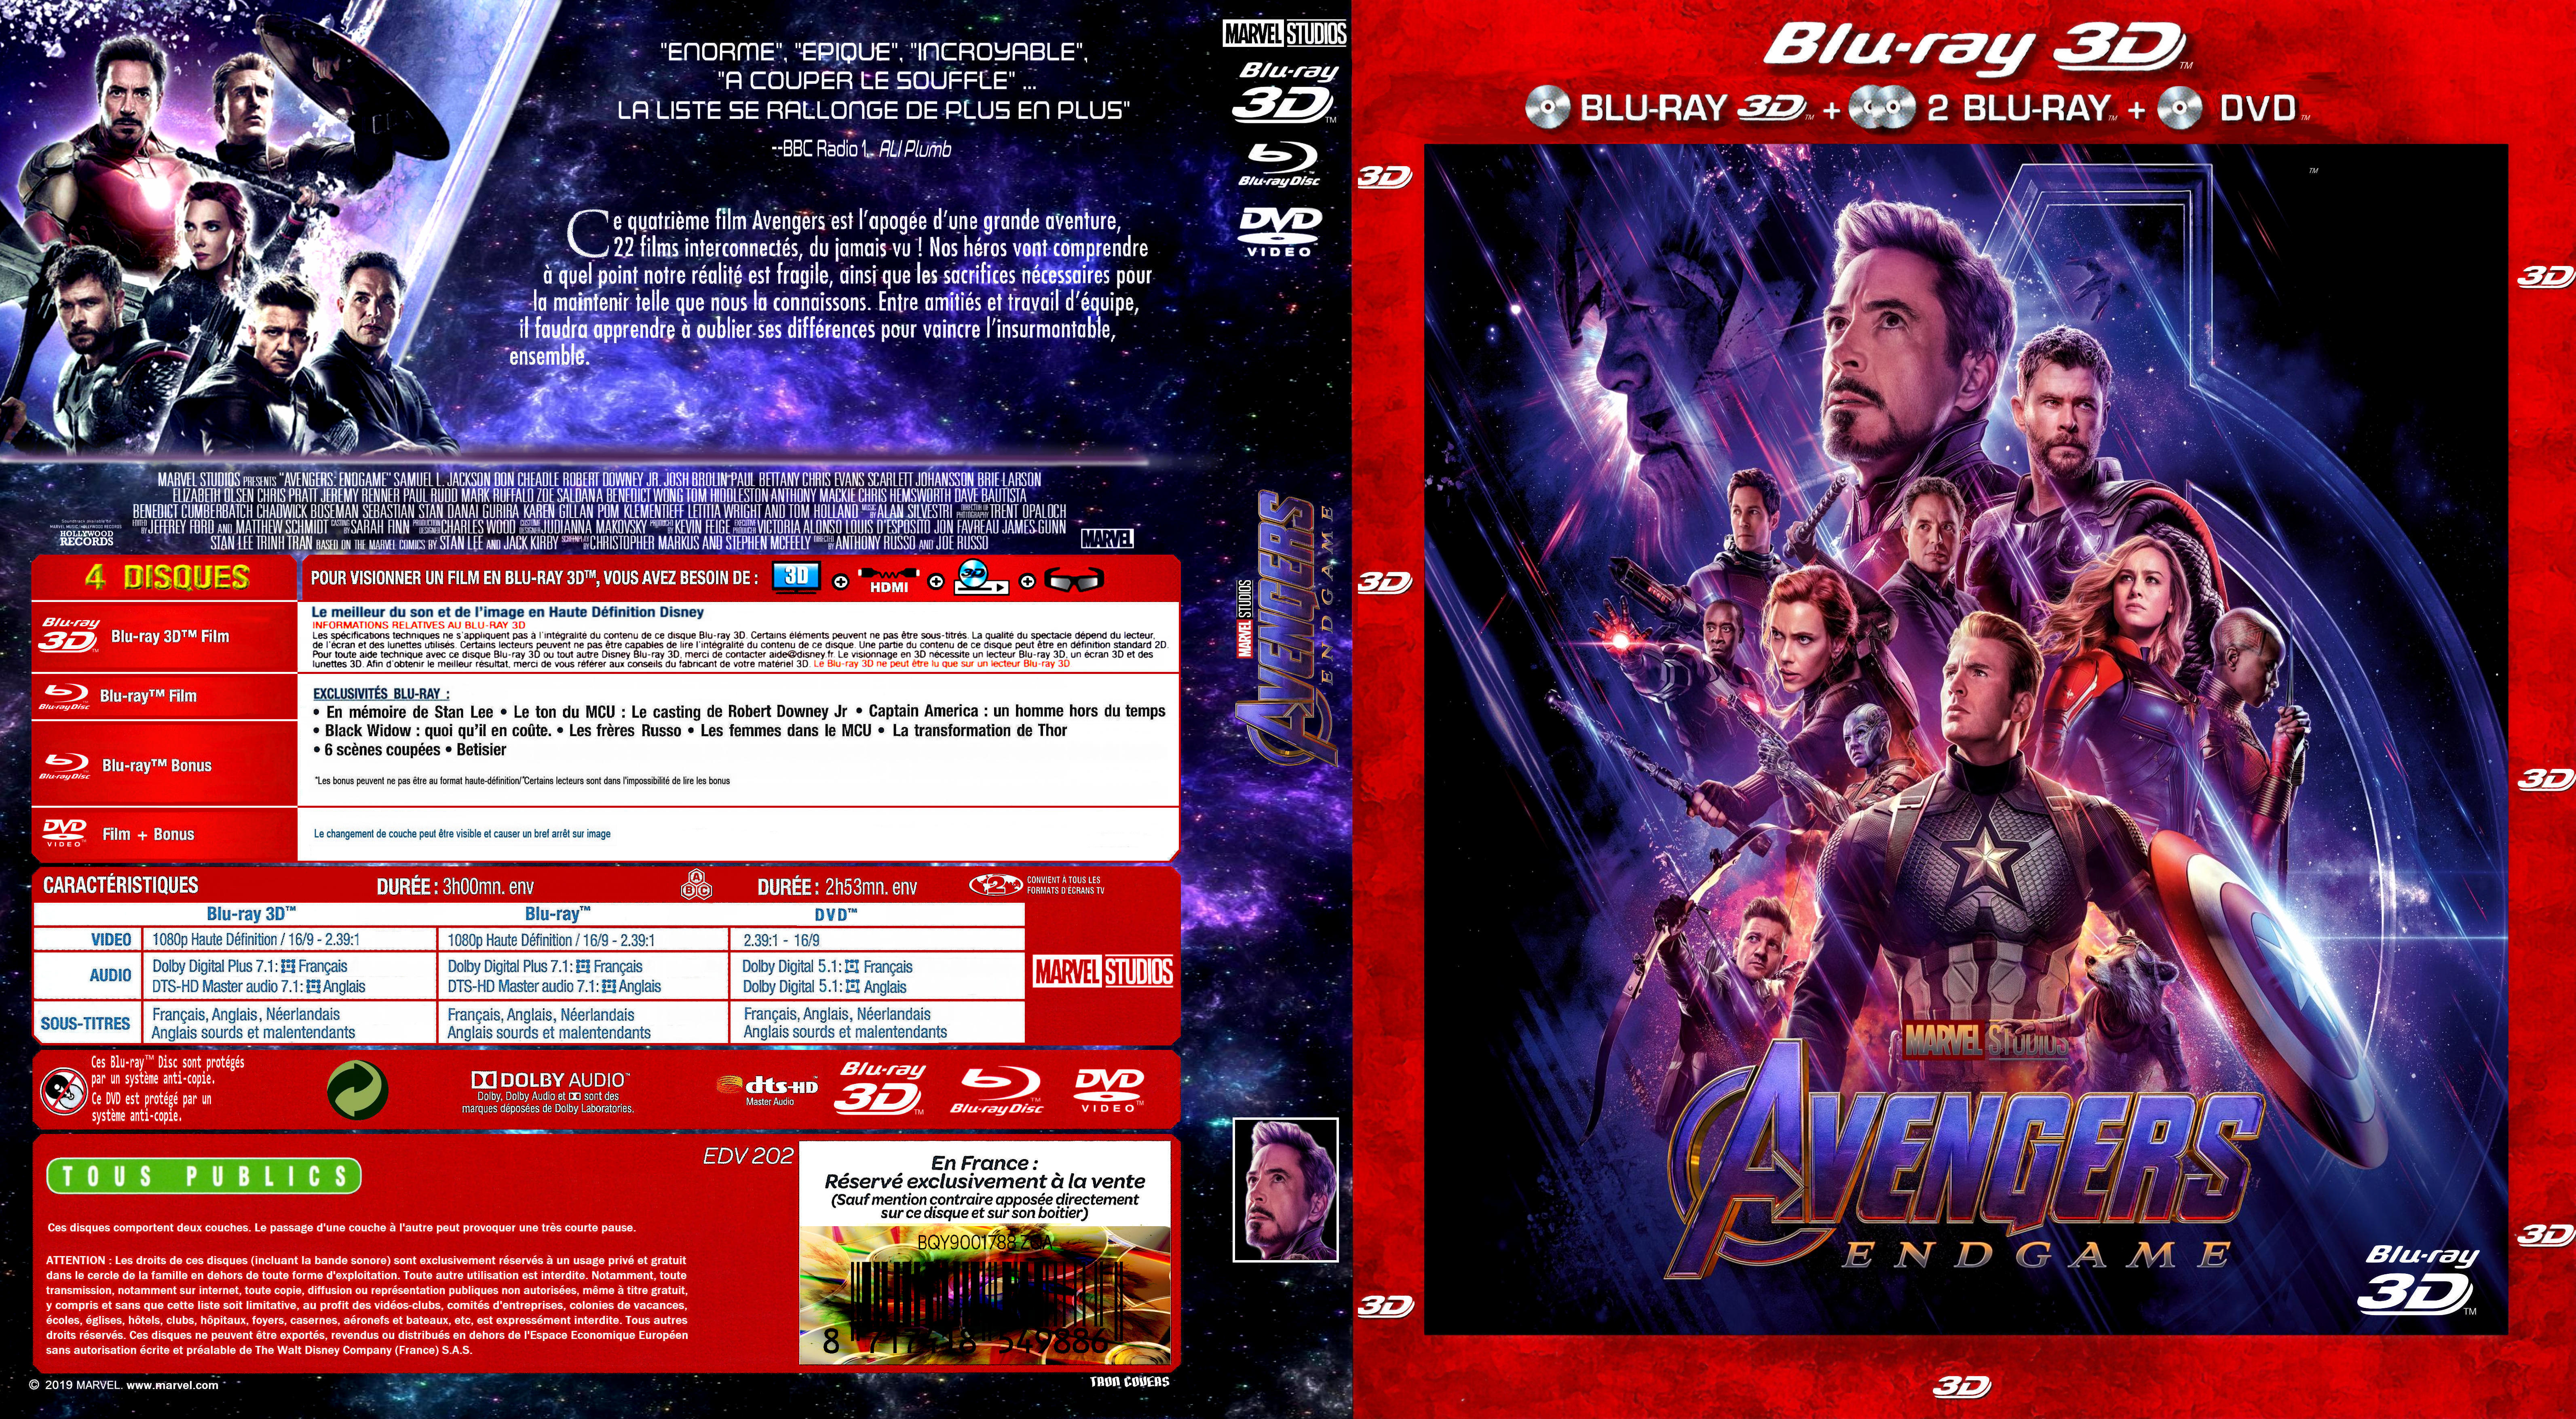 Jaquette DVD Avengers: Endgame 3D custom (BLU-RAY)